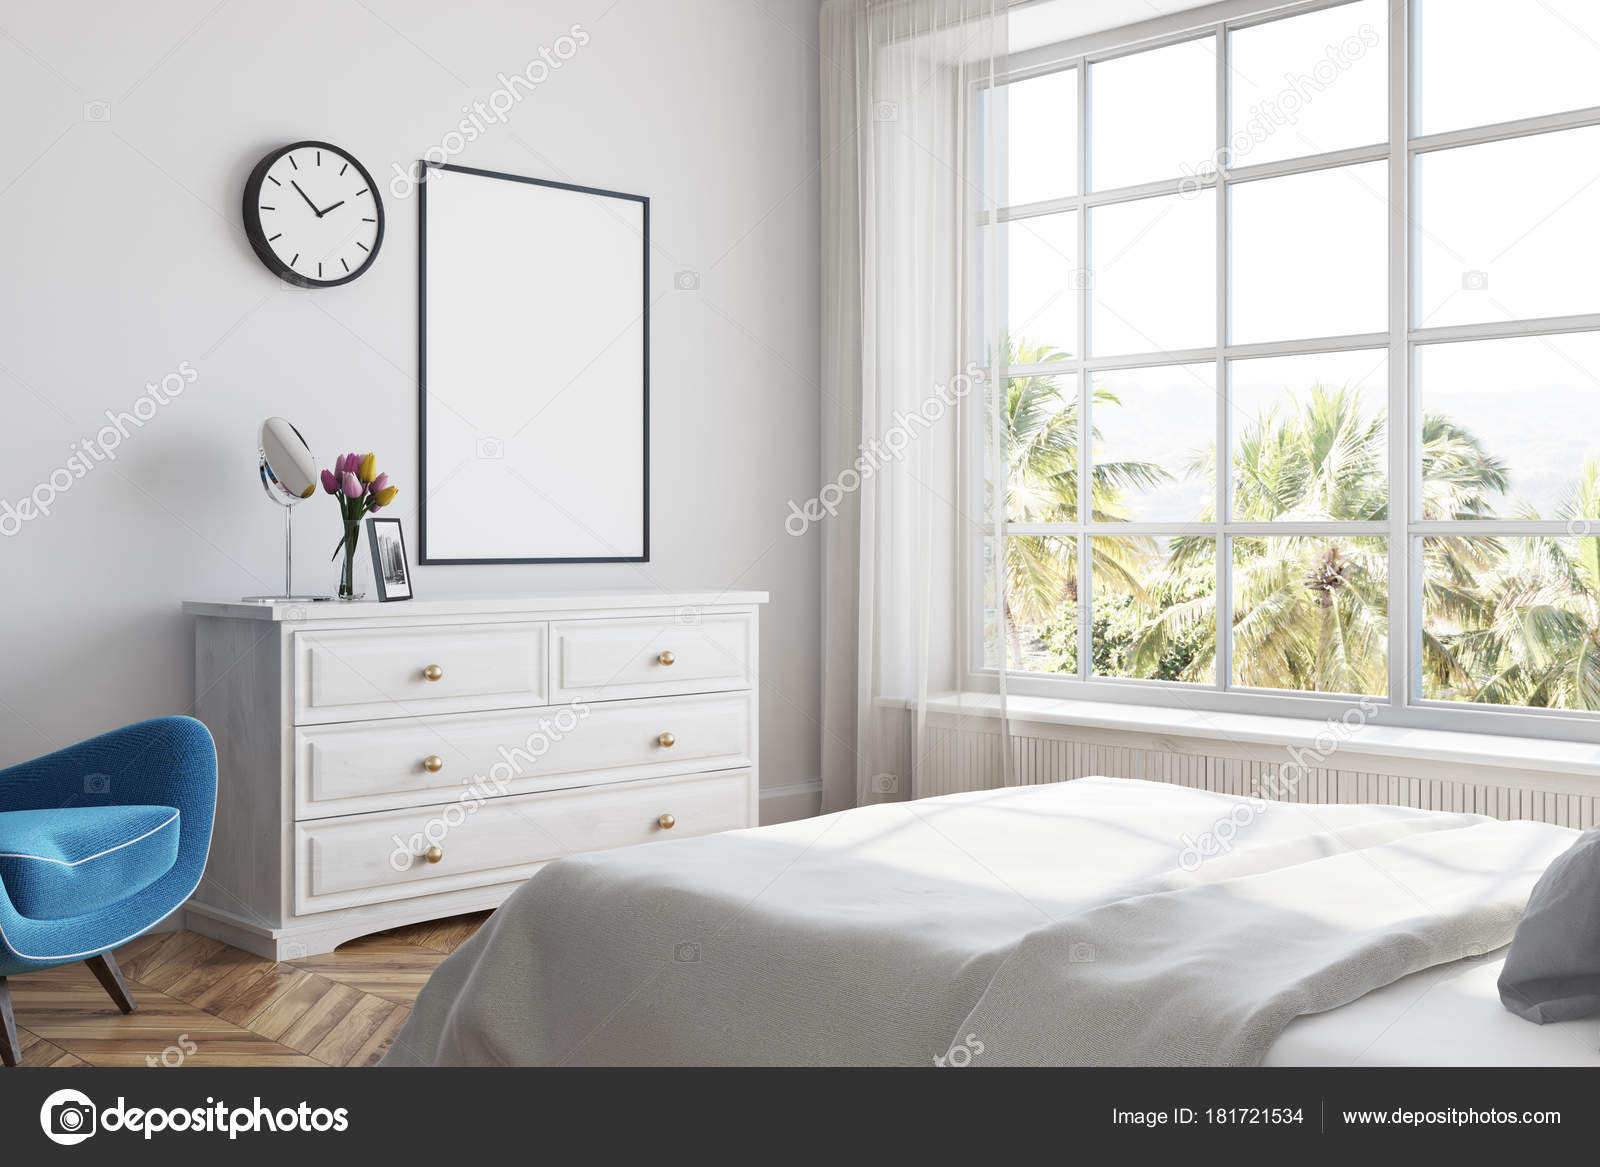 White Bedroom Corner Poster Dresser Stock Photo